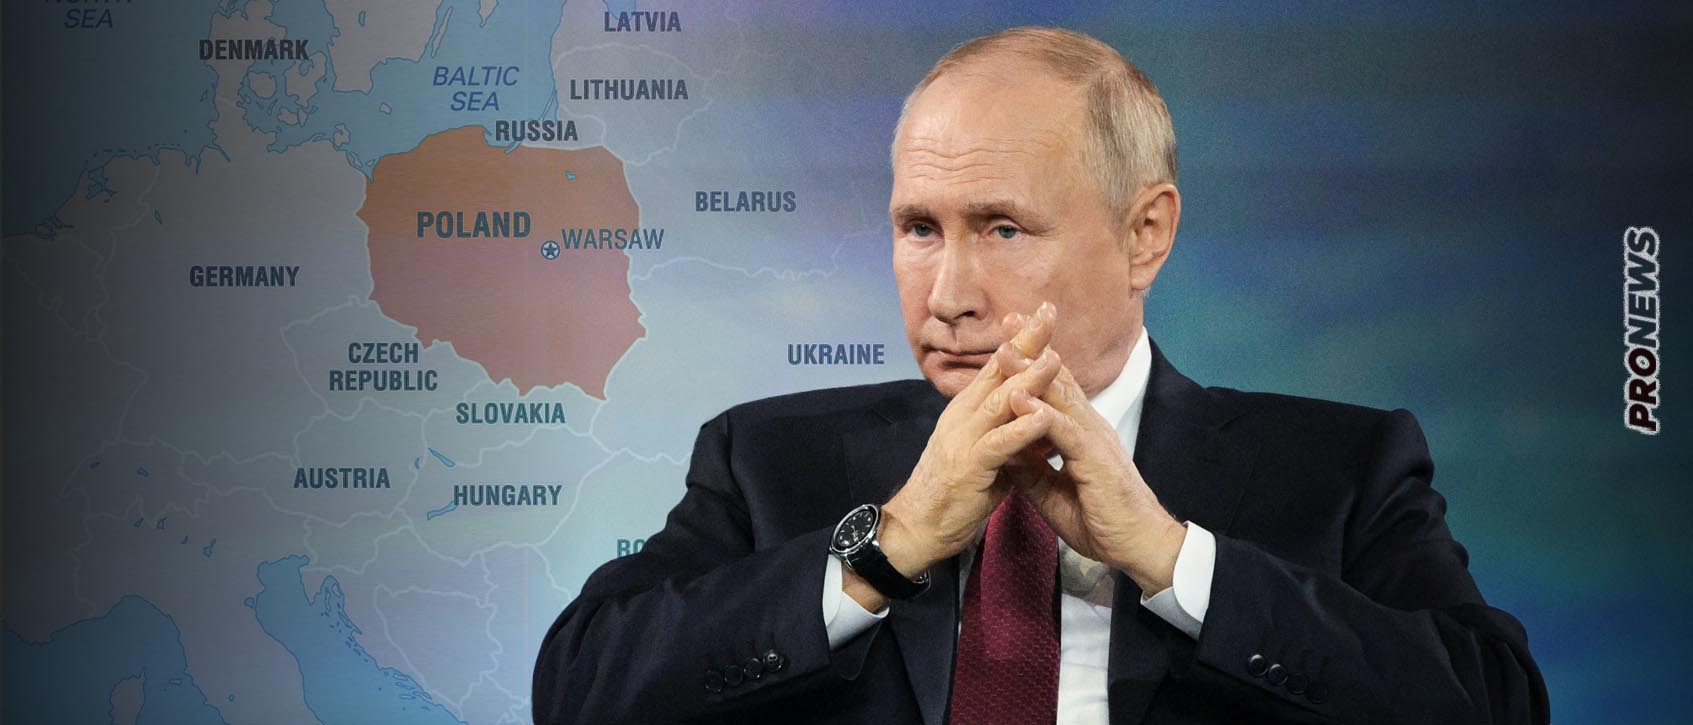  Ο Β.Πούτιν μιλά ξανά για «πολωνικά εδάφη» στην Ουκρανία: «Αν το Κίεβο αφήσει τις πολωνικές μονάδες να μπουν θα τα χάσει».